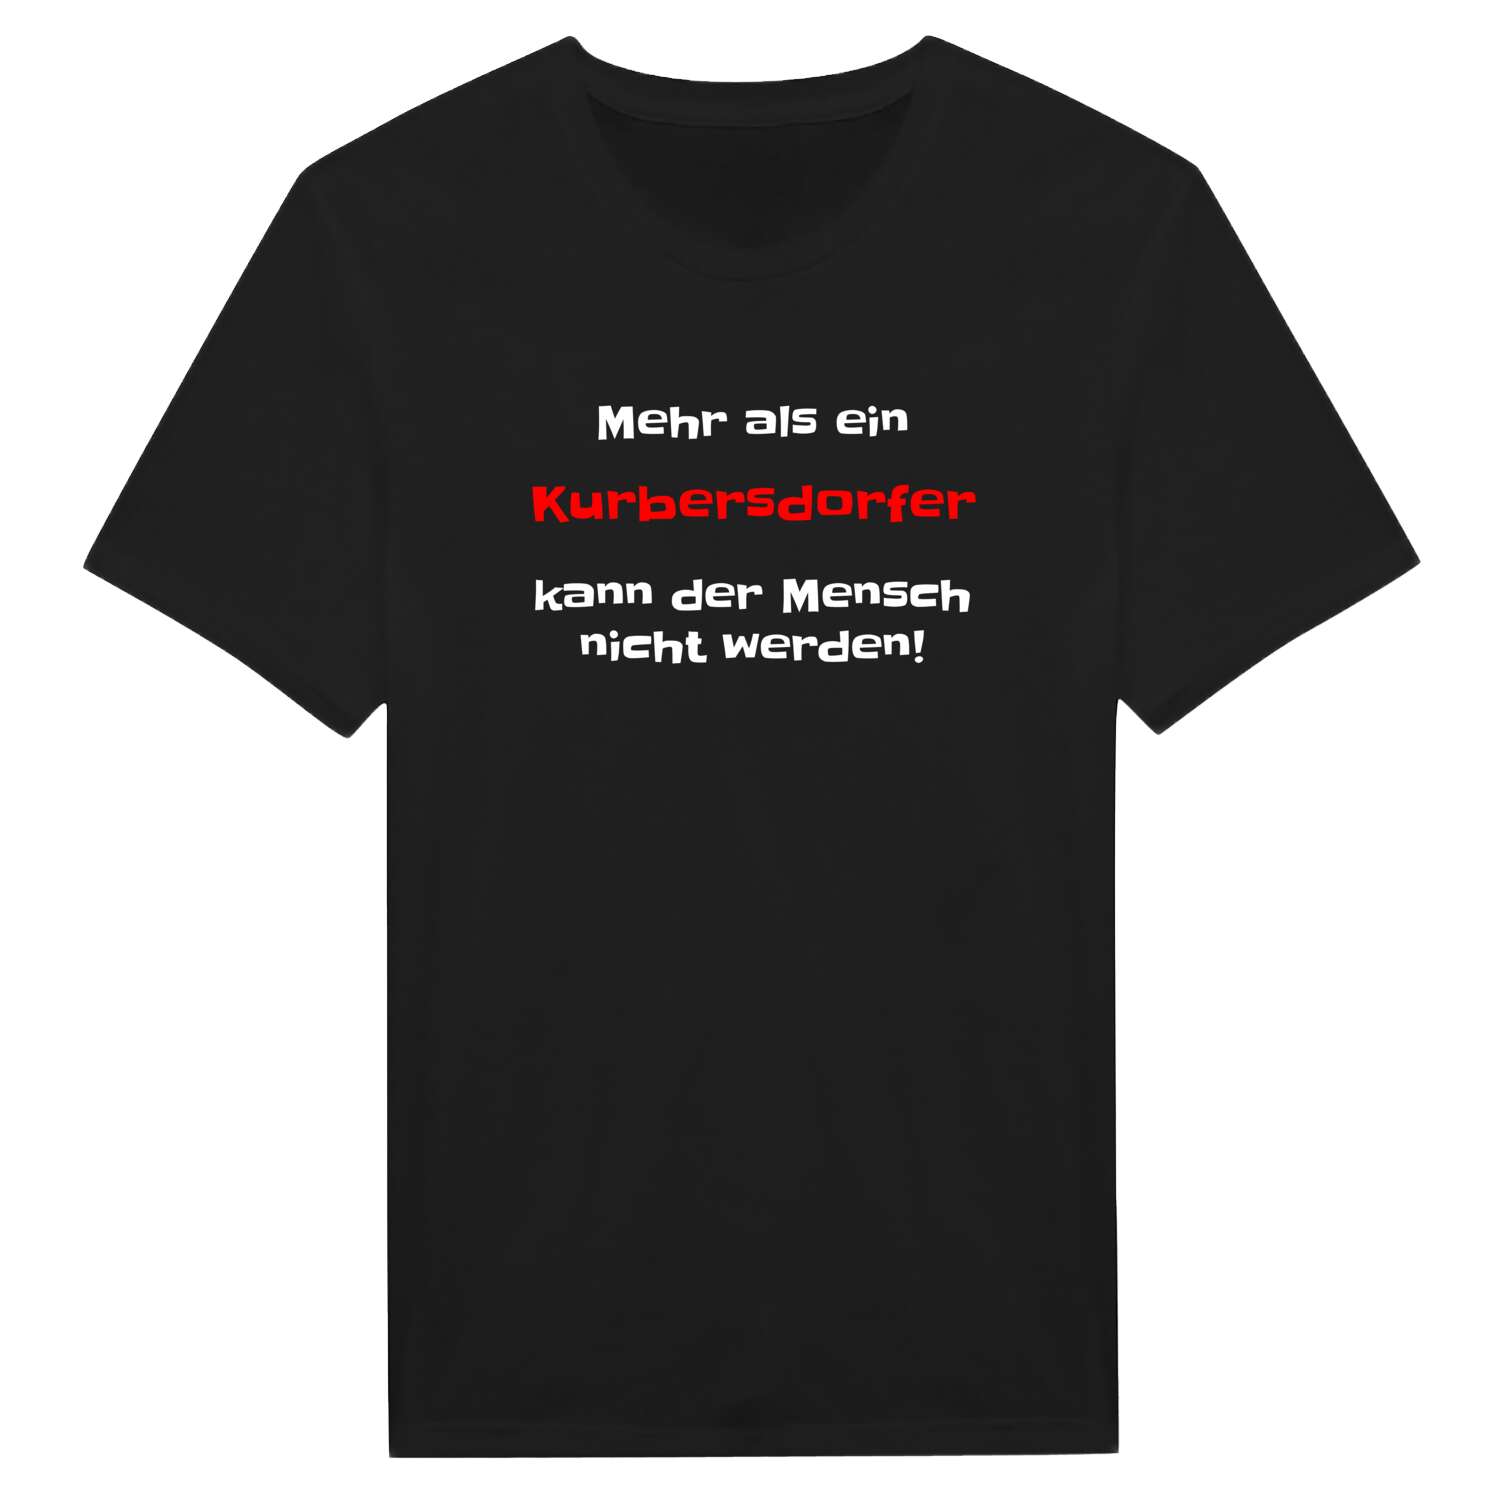 Kurbersdorf T-Shirt »Mehr als ein«